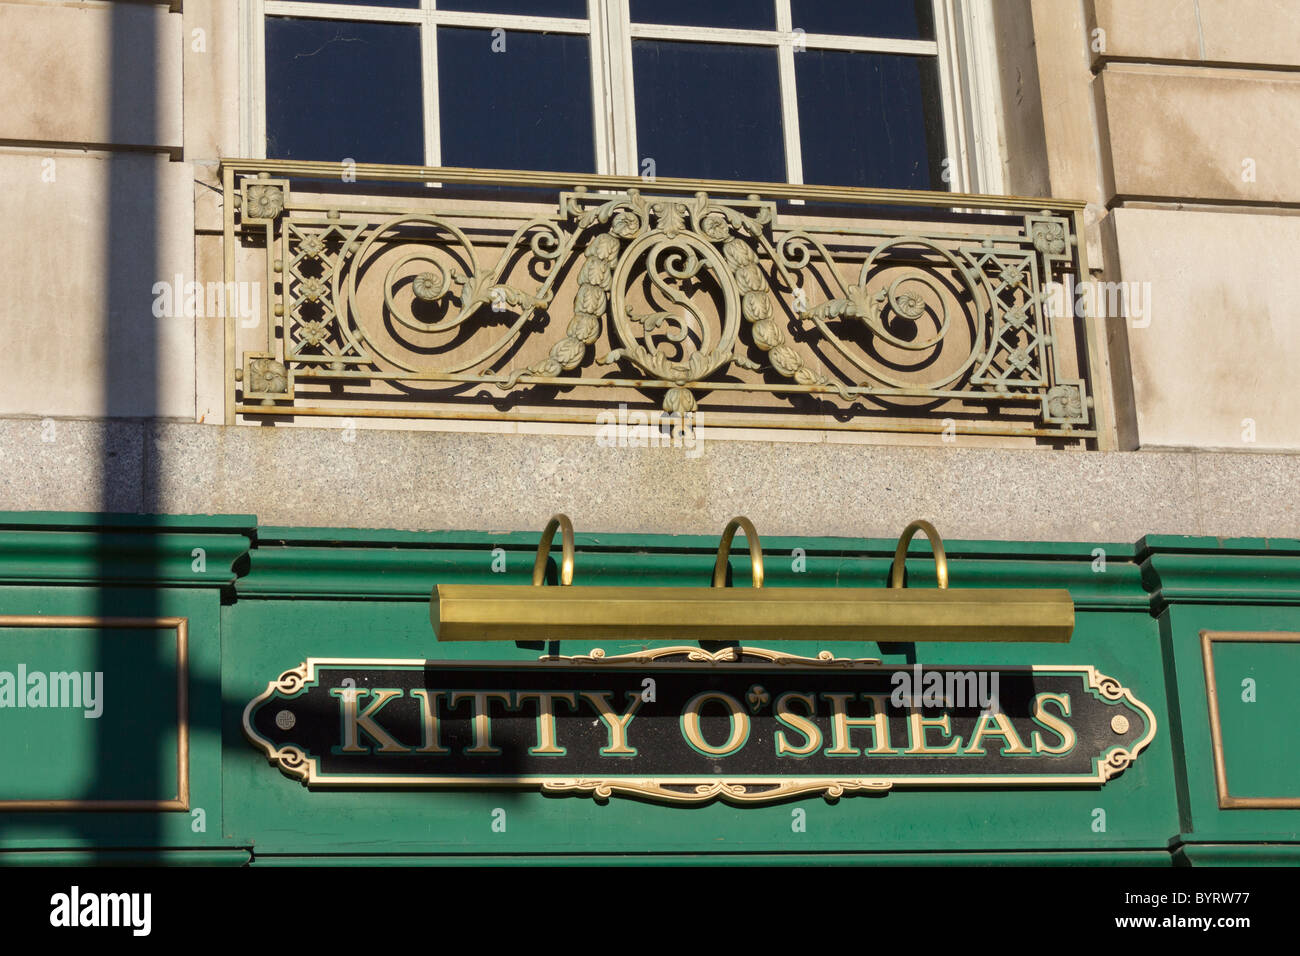 sign for Kitty O'Sheas pub, Hilton Chicago luxury hotel, Chicago, Illinois. USA Stock Photo